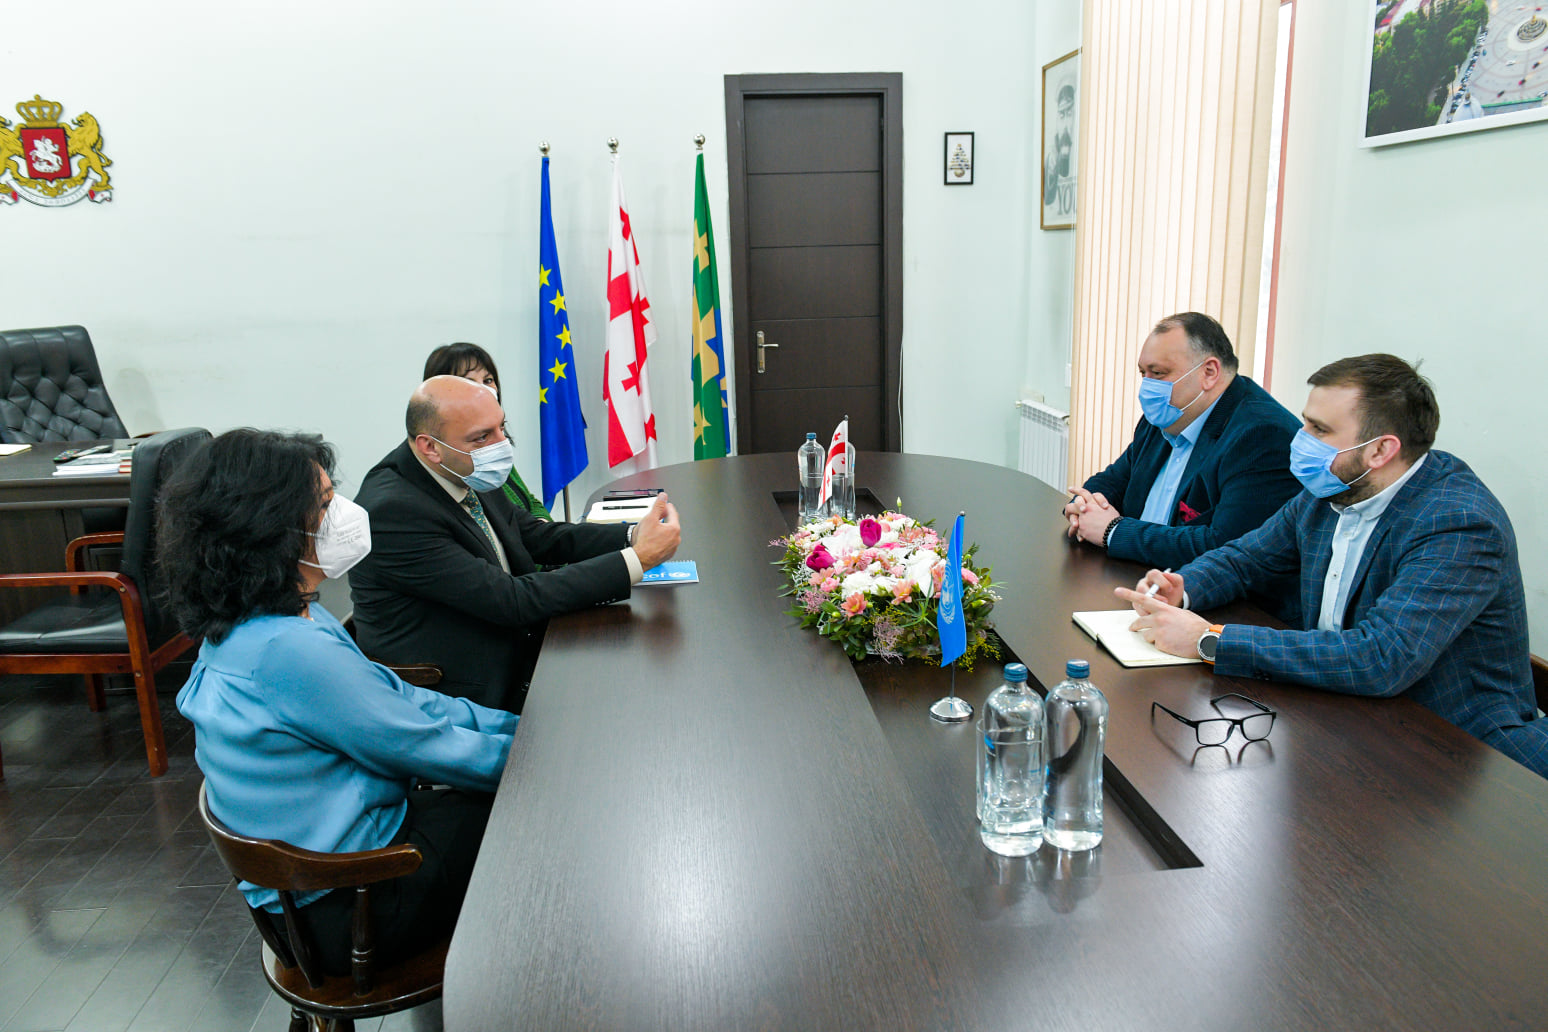 Ghassan Khalil visited the Mayor of Kutaisi, Ioseb Khakhaleishvili